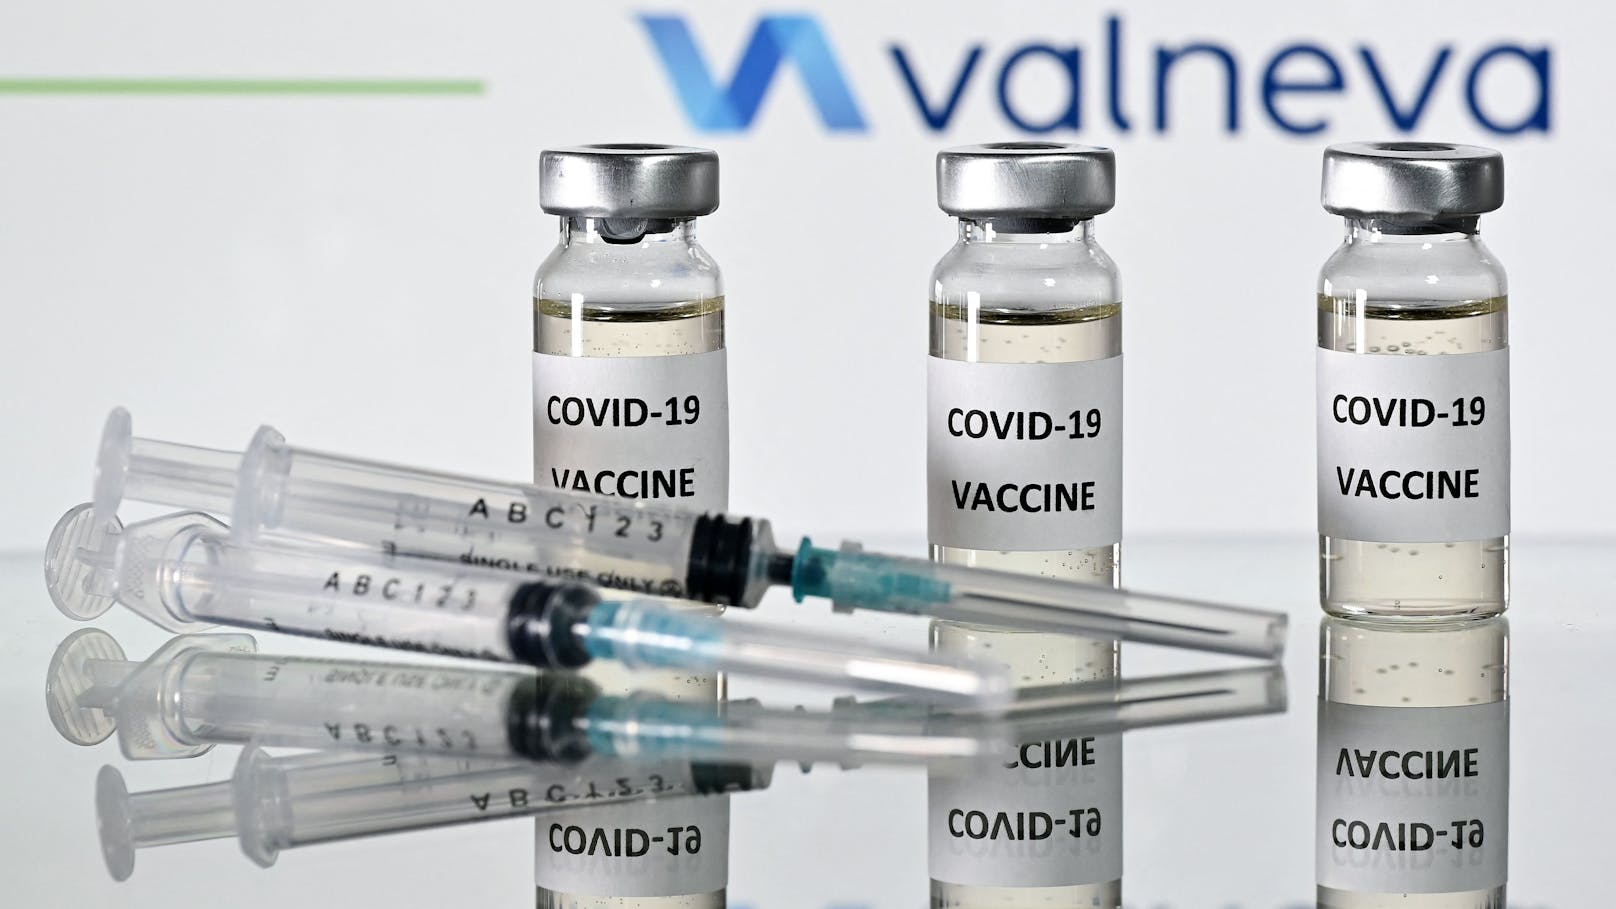 Der Valneva-Impfstoff bekam von der EMA grünes Licht.